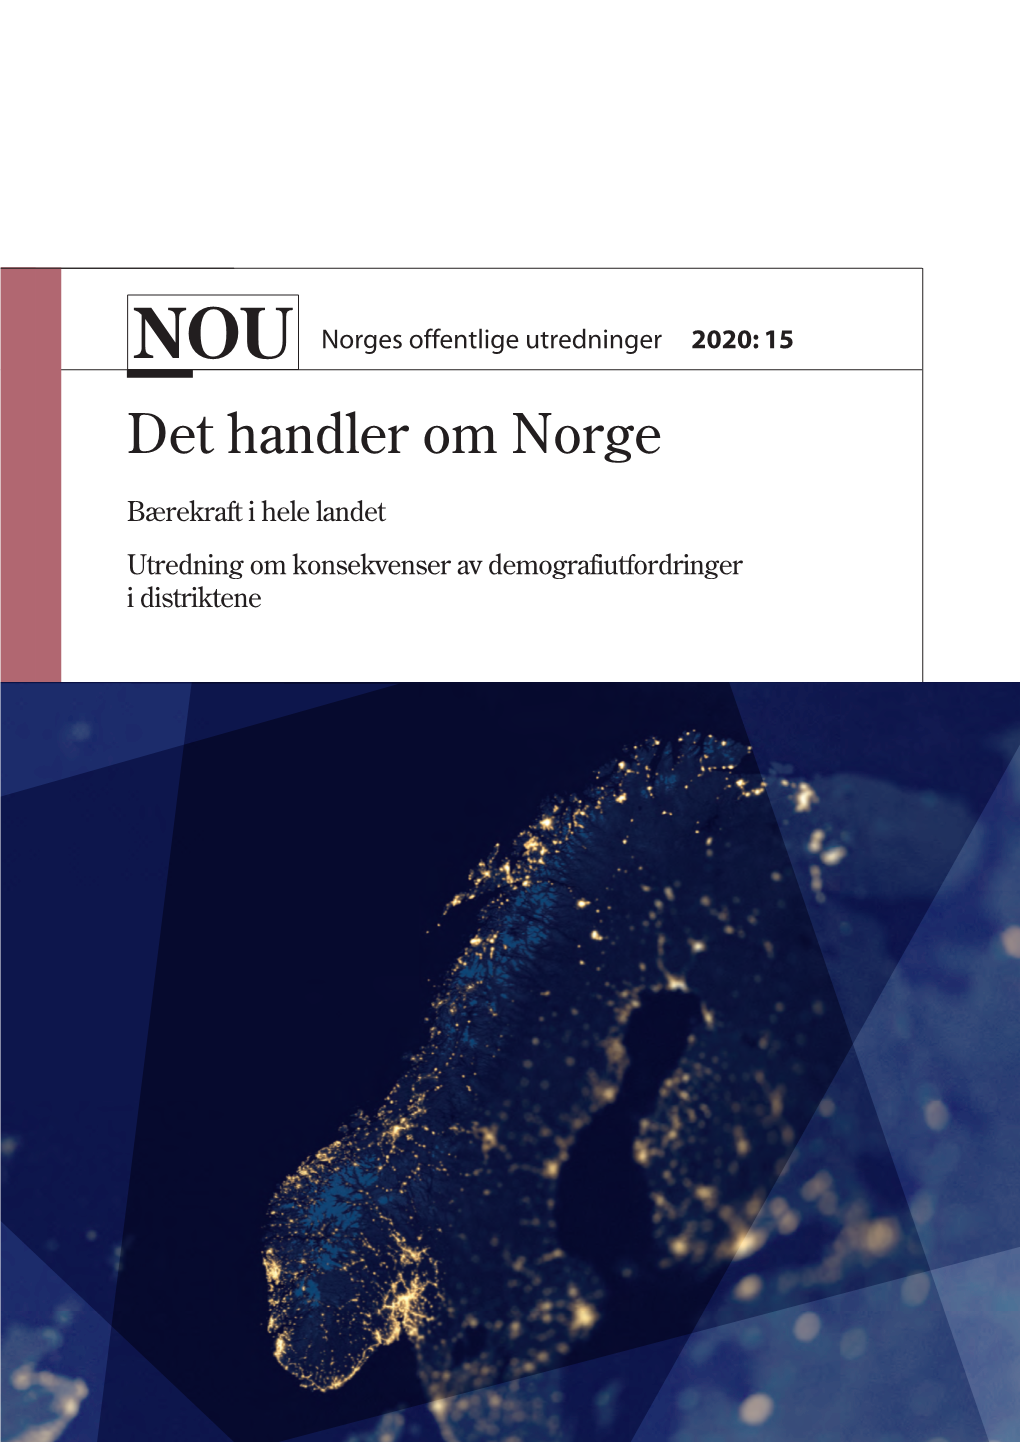 NOU 2020:15 – Det Handler Om Norge